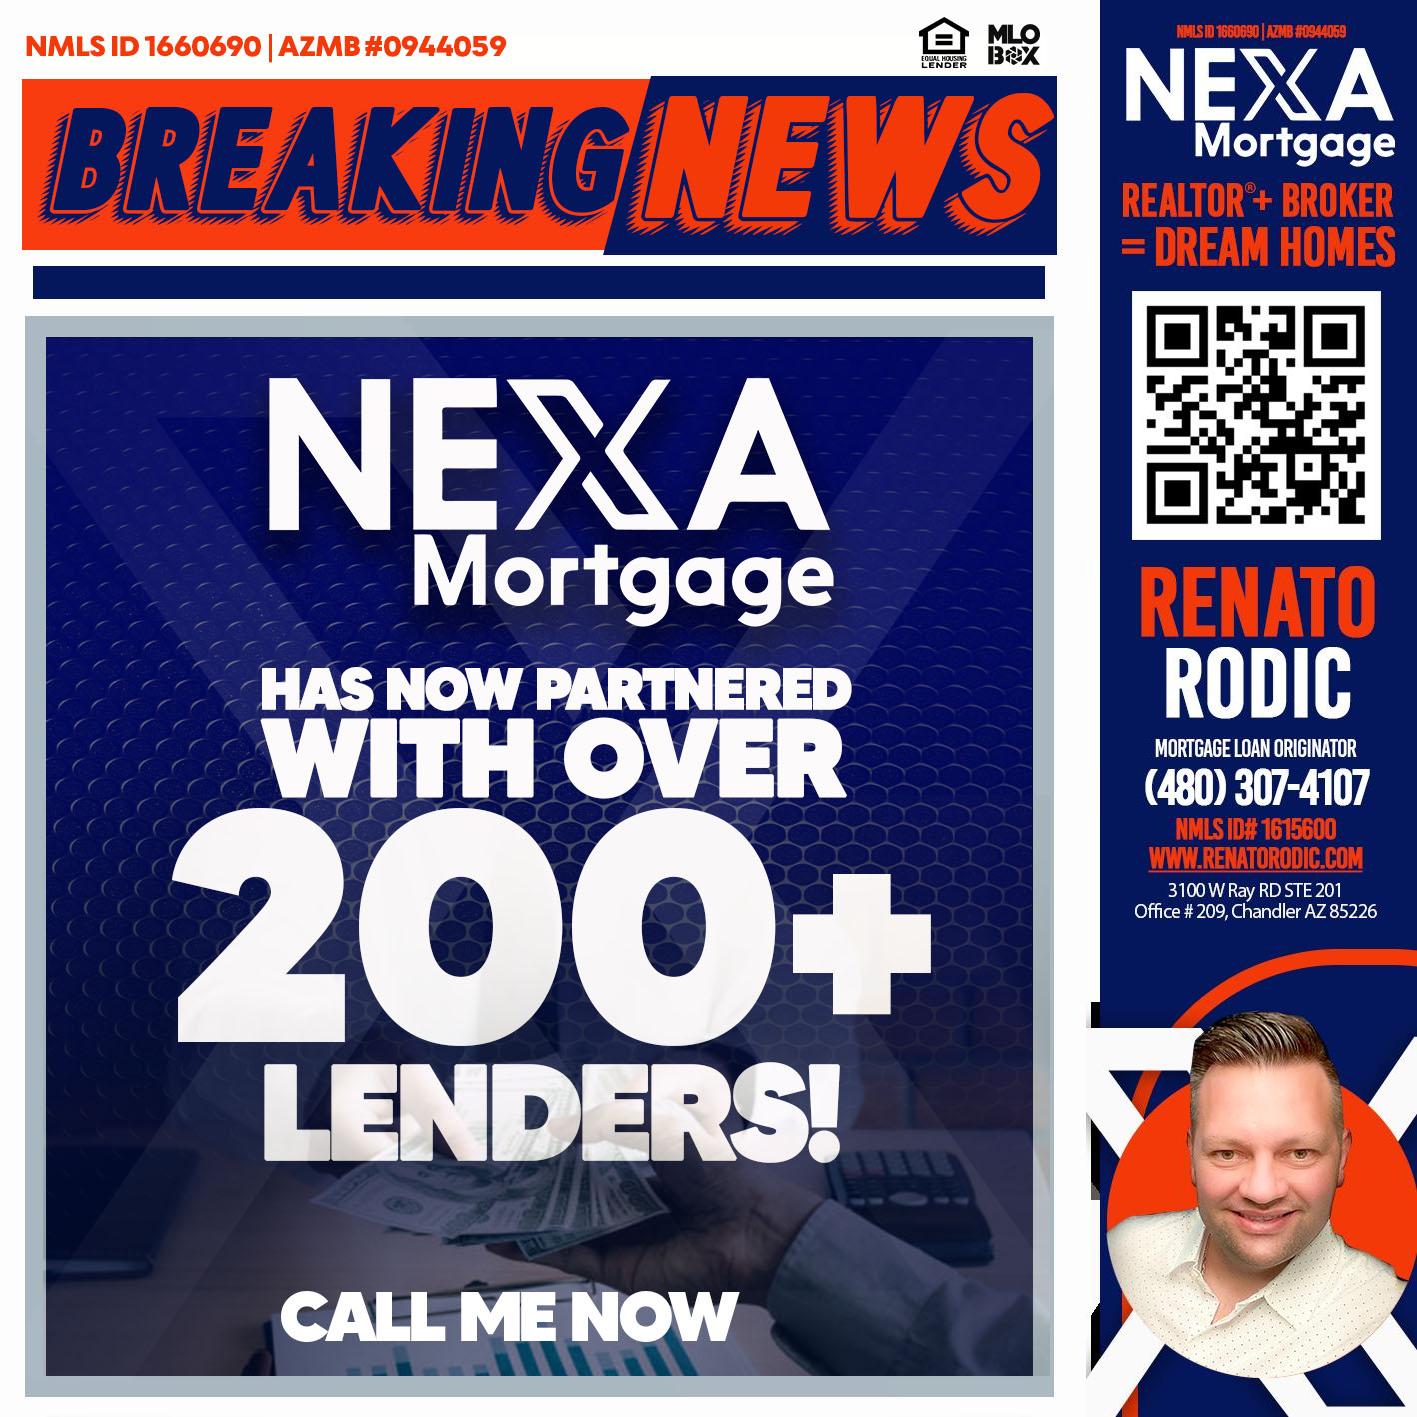 200+ - Renato Rodic -Mortgage Loan Originator